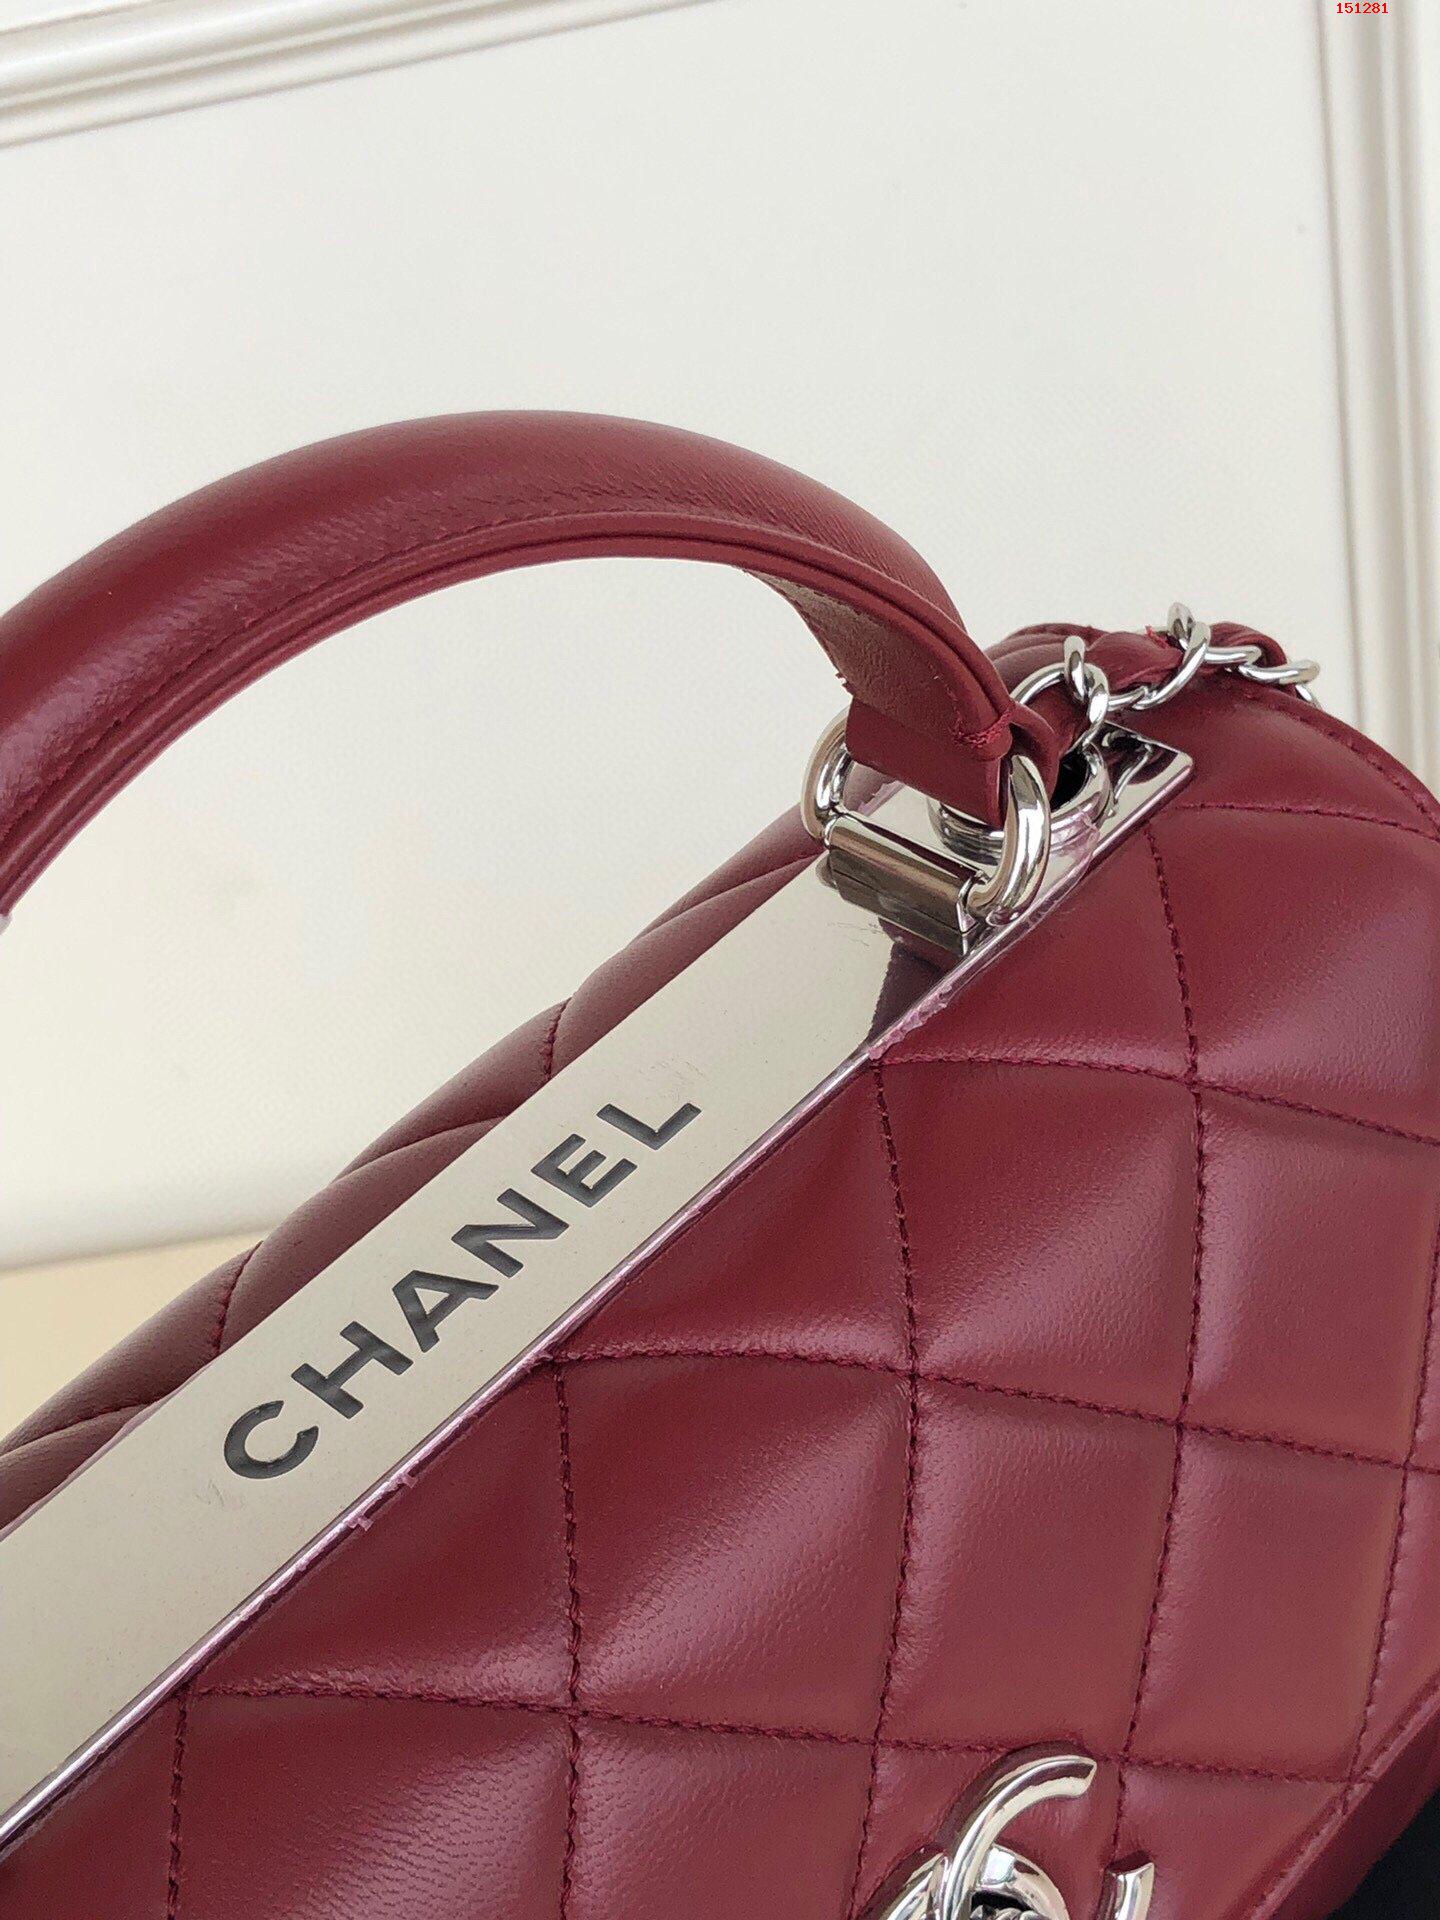 品牌:Chanel 简介:原单 香奈儿女包经典款式 